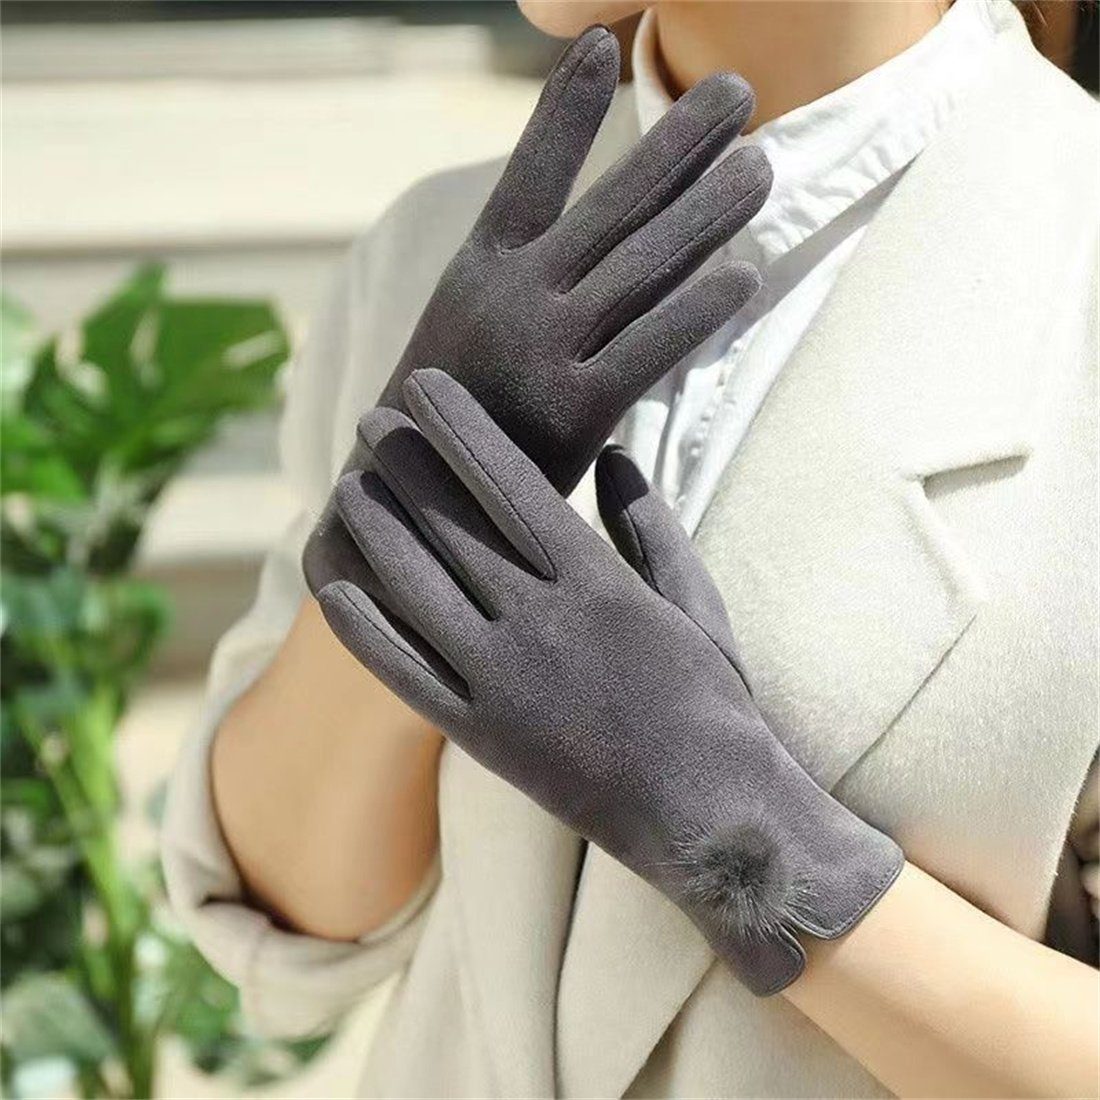 Wintermode Handschuhe, Damen DÖRÖY gepolsterte warme Fleecehandschuhe Touchscreen-Handschuhe Grau